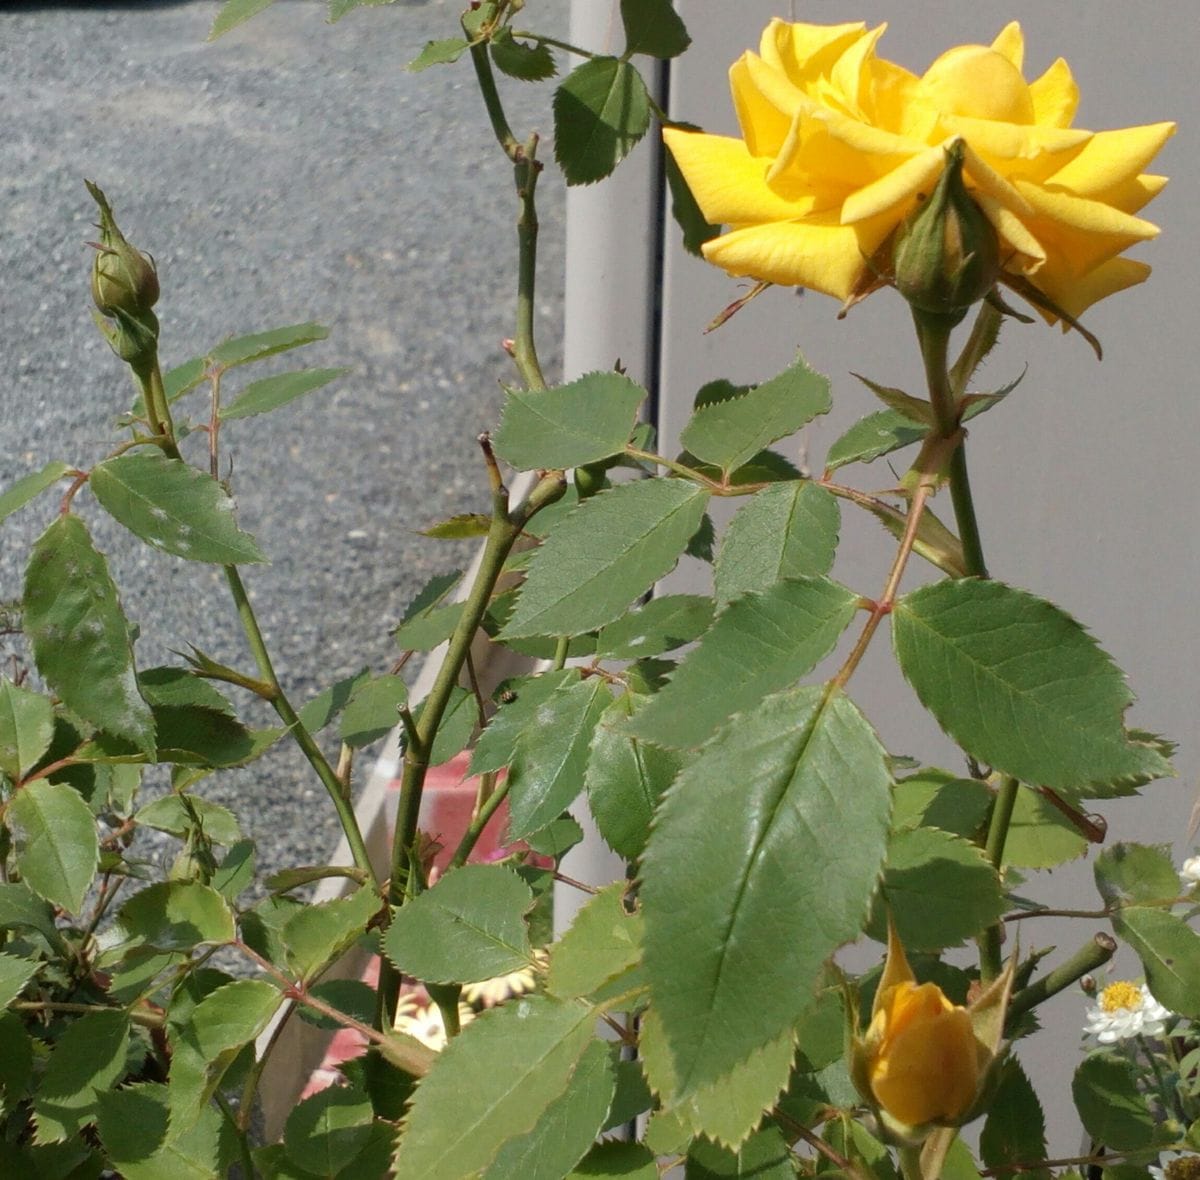 真夏日直前の暑さにも負けず、元気に開花中の黄色い「ミニバラ」です🙌蕾が一杯あるの